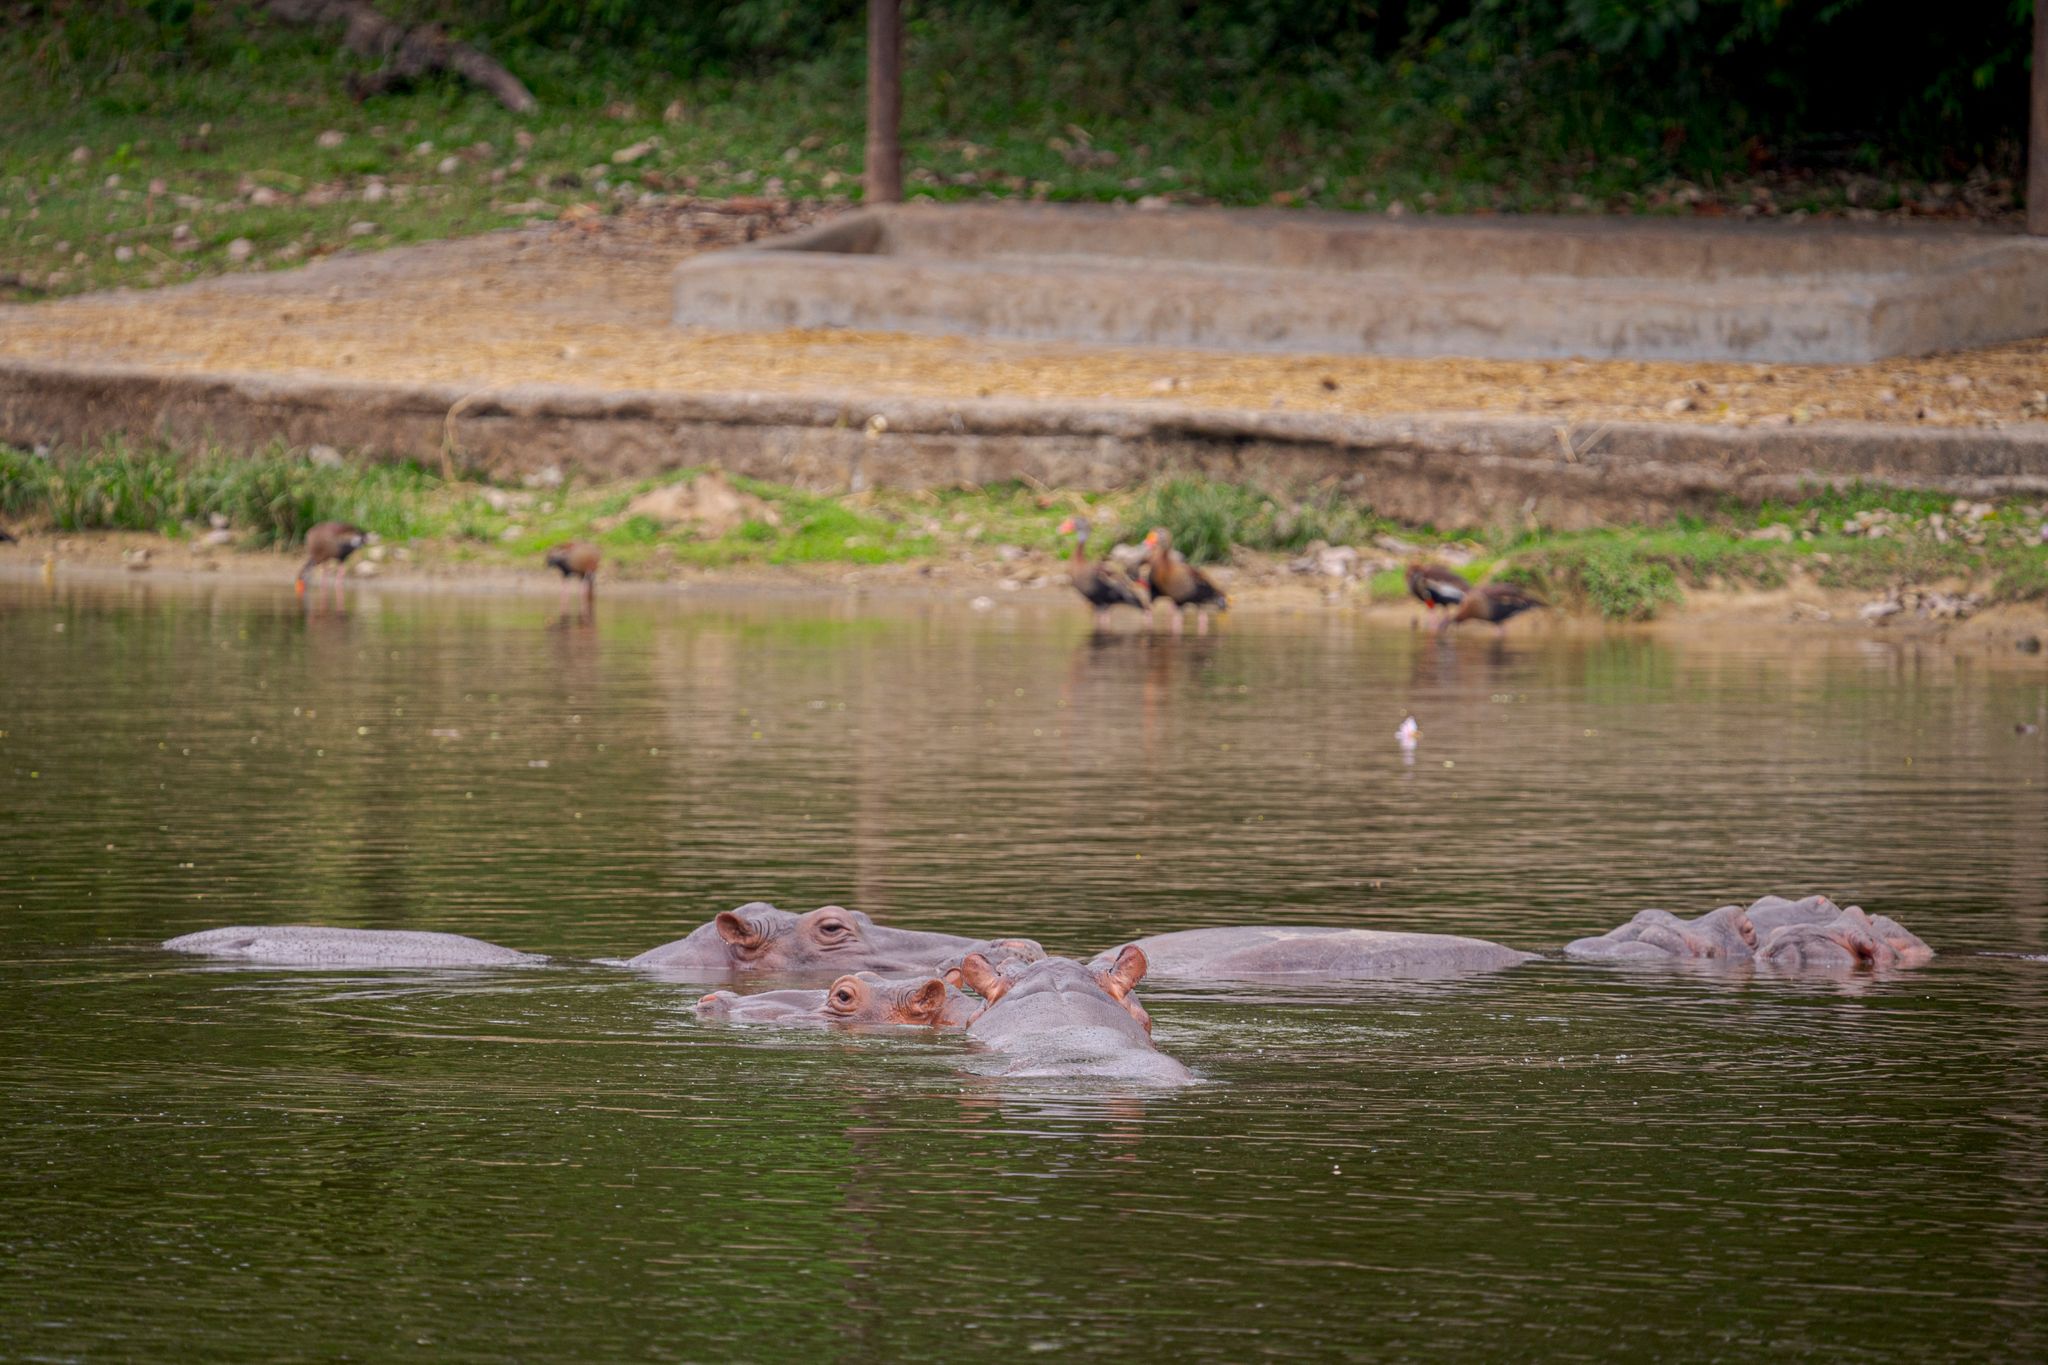 Hipopótamos en uno de los lagos del parque "Hacienda Nápoles" (Foto: Luis Bernardo Cano/dpa)